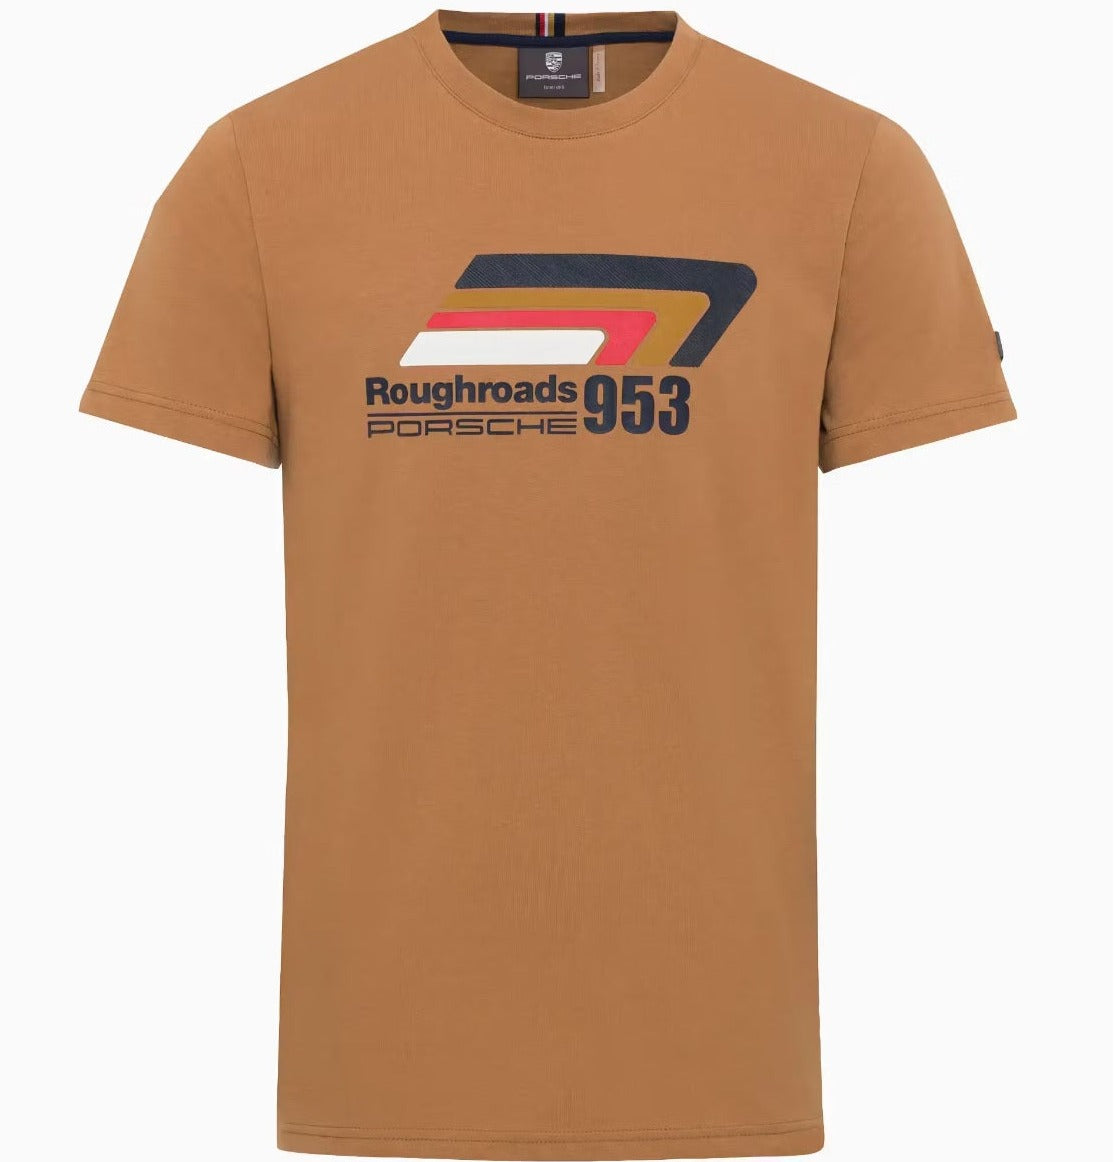 Porsche Unisex T-Shirt - Roughroads